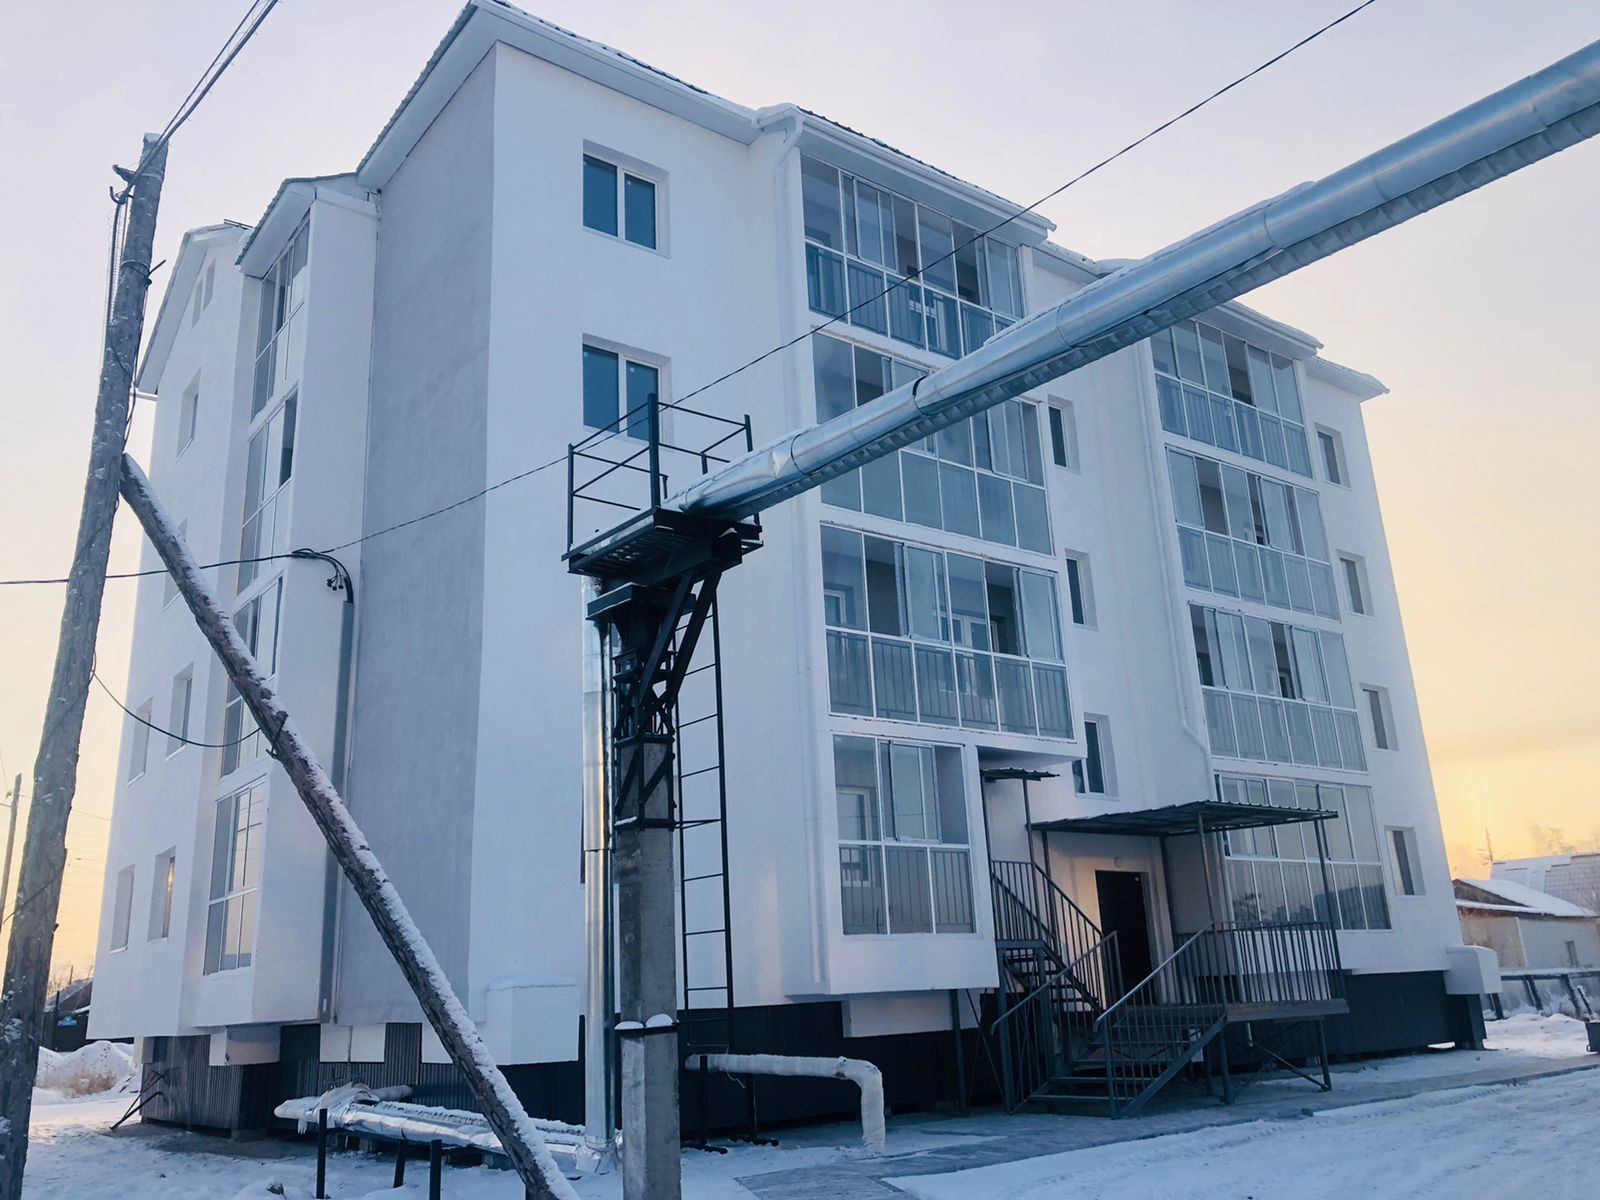 Порядка 30 семей переедут из аварийных домов в двух районах Якутии